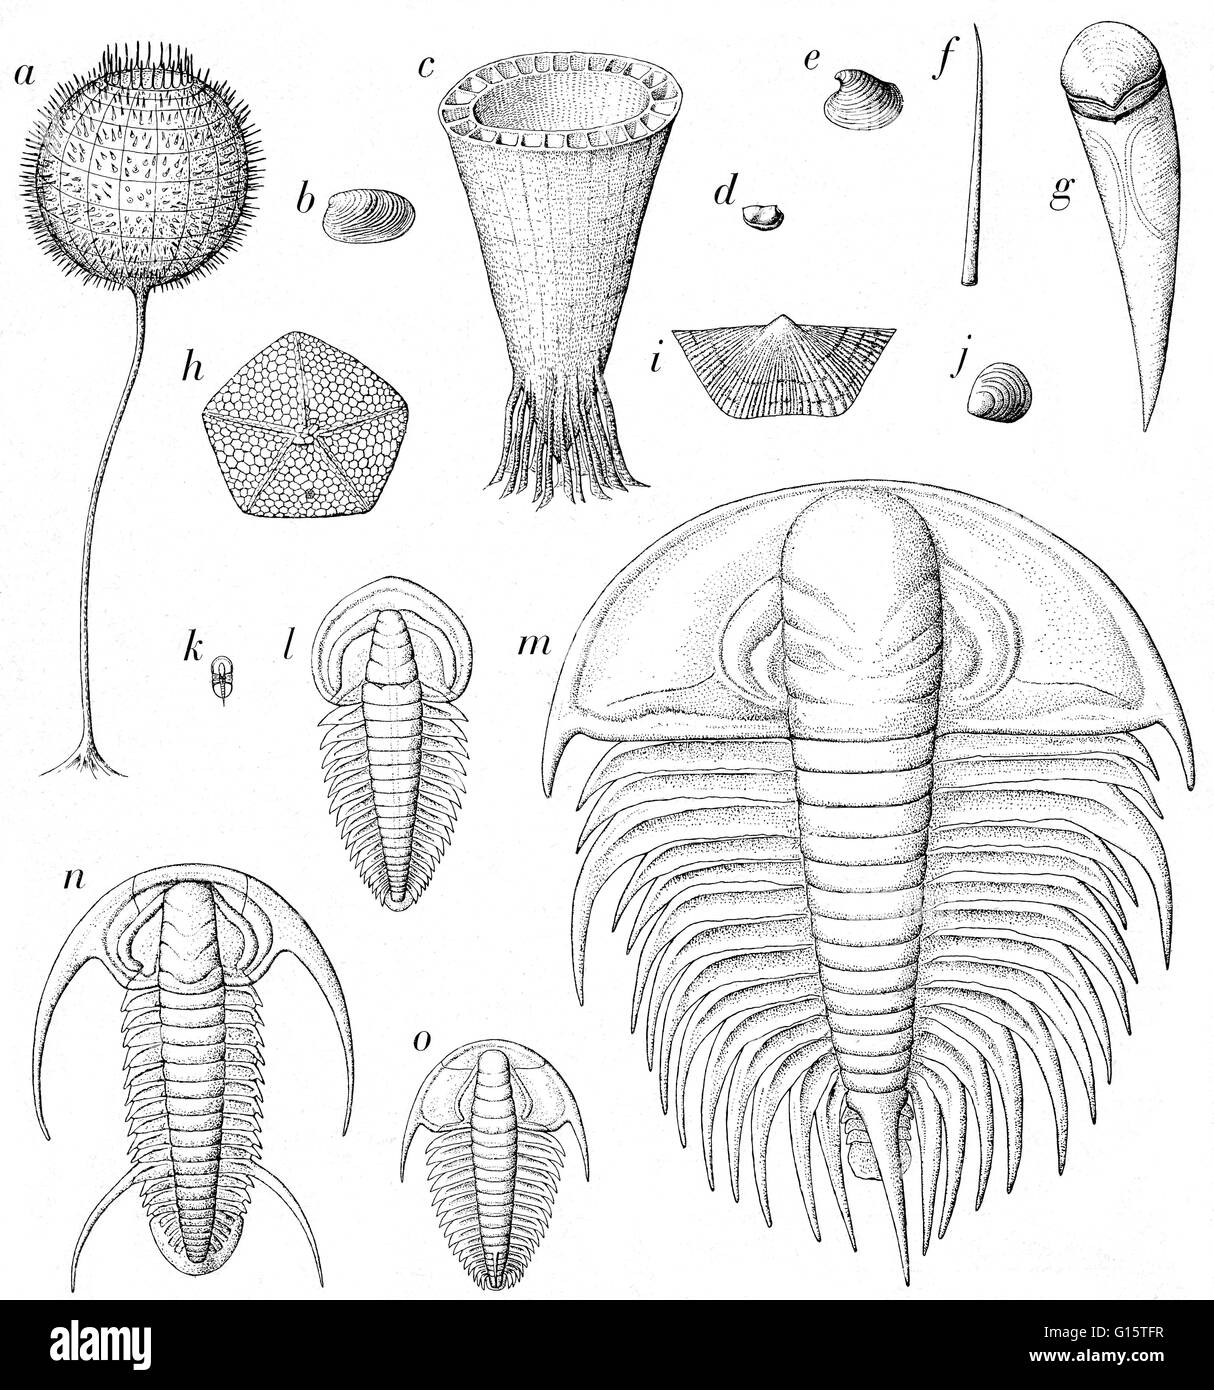 Berechtigt: Fossil Aufzeichnung der frühen Kambrium Zeiten. Einige sind fast lebensgroß gezeichnet. Dazu gehören Gliederfüßer (D und K - O), Weichtiere (B, E und vielleicht, F und G), Brachiopoden (I, J), Stachelhäuter (H), Schwämme (A) und andere Organismen wie (C) die Probabl Stockfoto